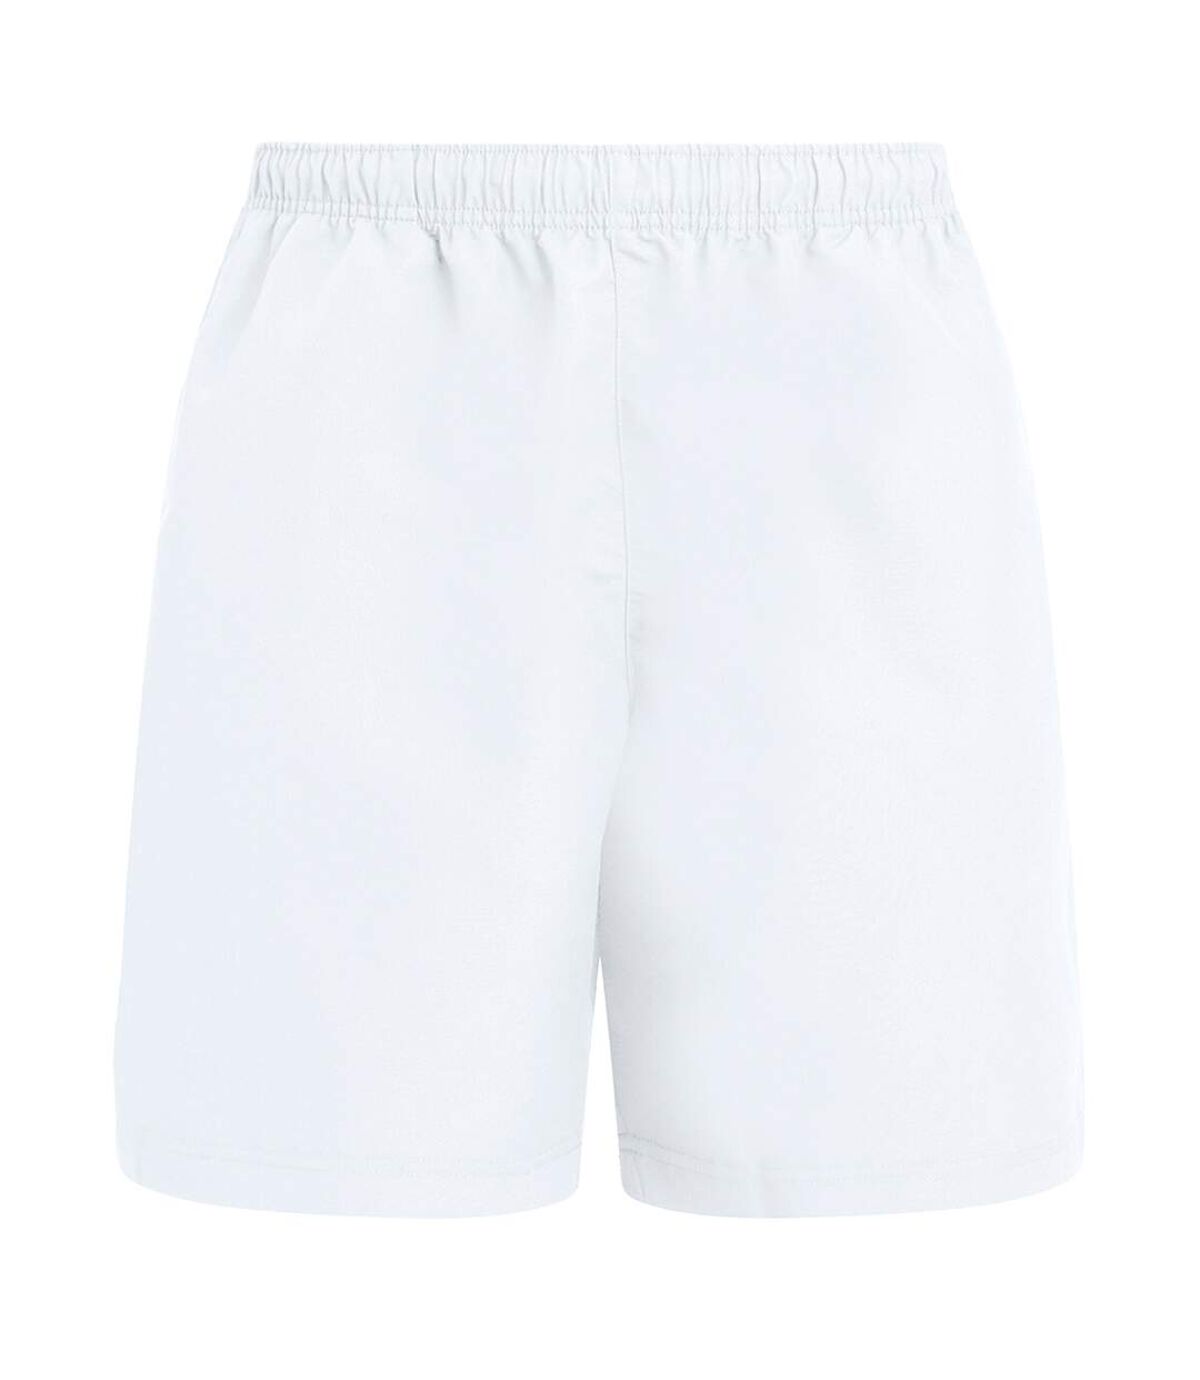 Canterbury Mens Club Shorts (White)